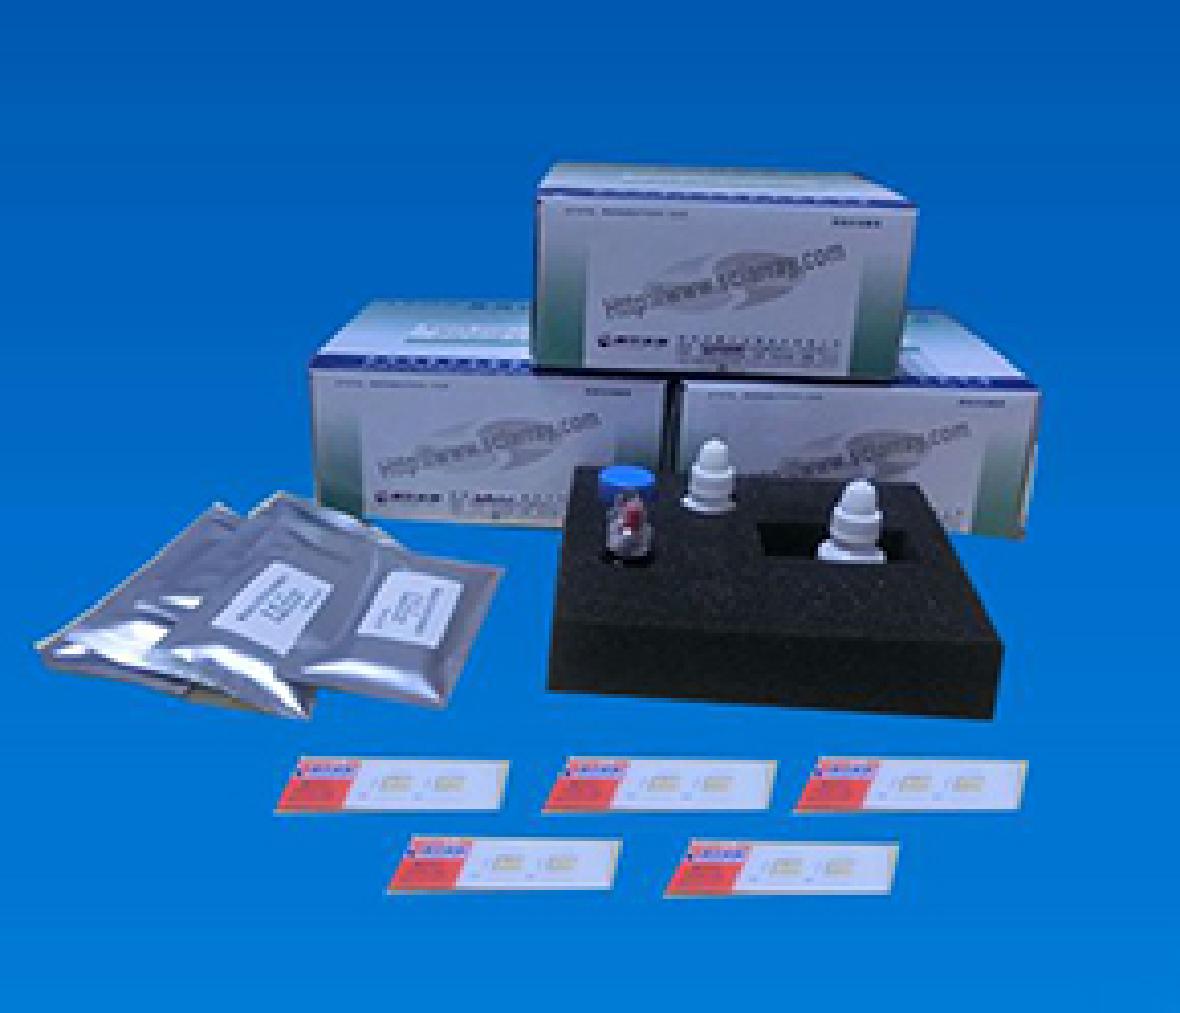 糖尿病自身抗体联检试剂盒（微阵列芯片法）